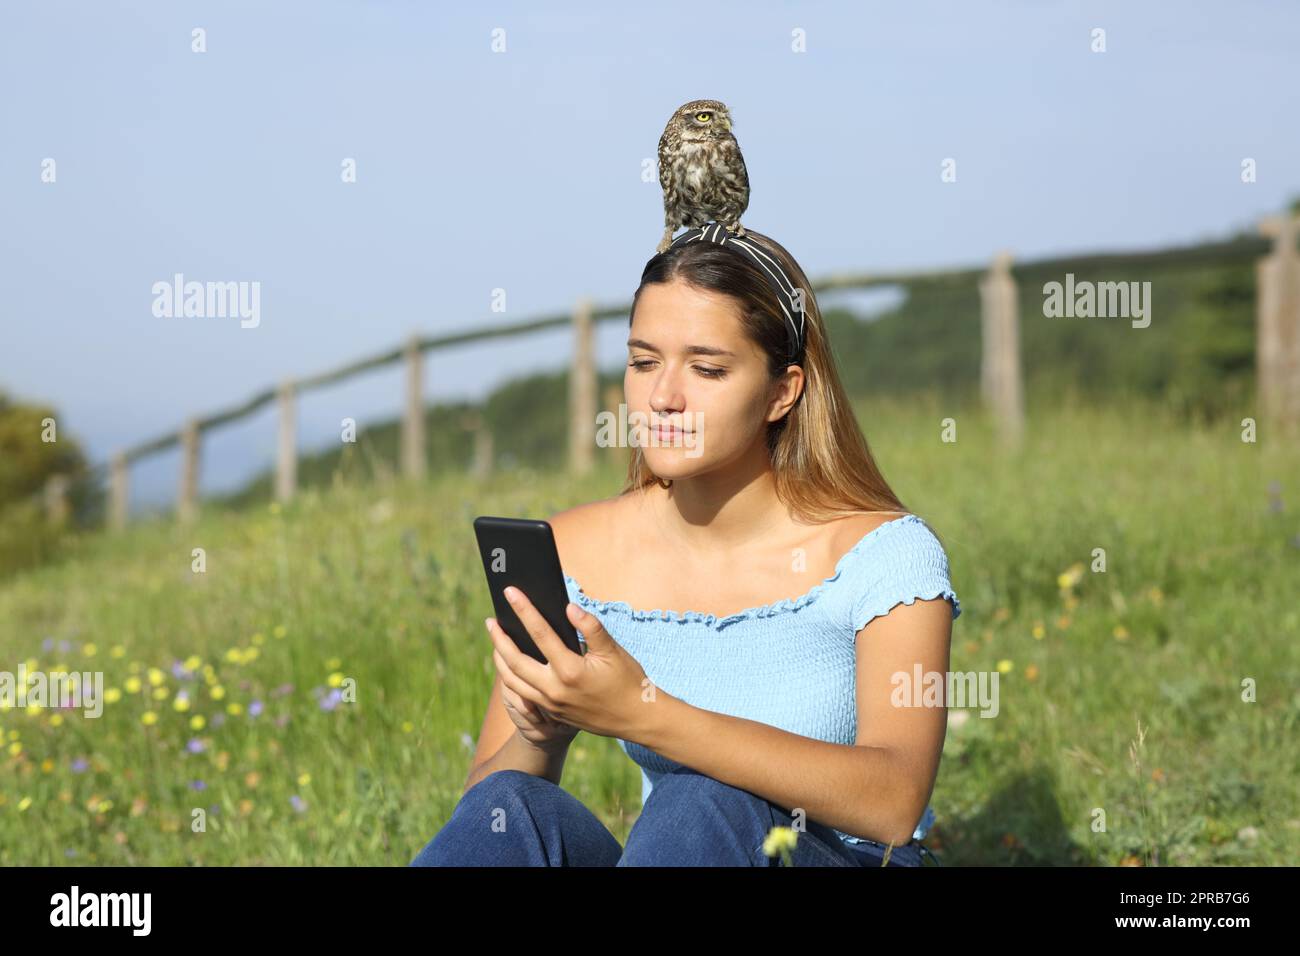 Eine Frau, die mit einem Vogel am Kopf telefoniert Stockfoto